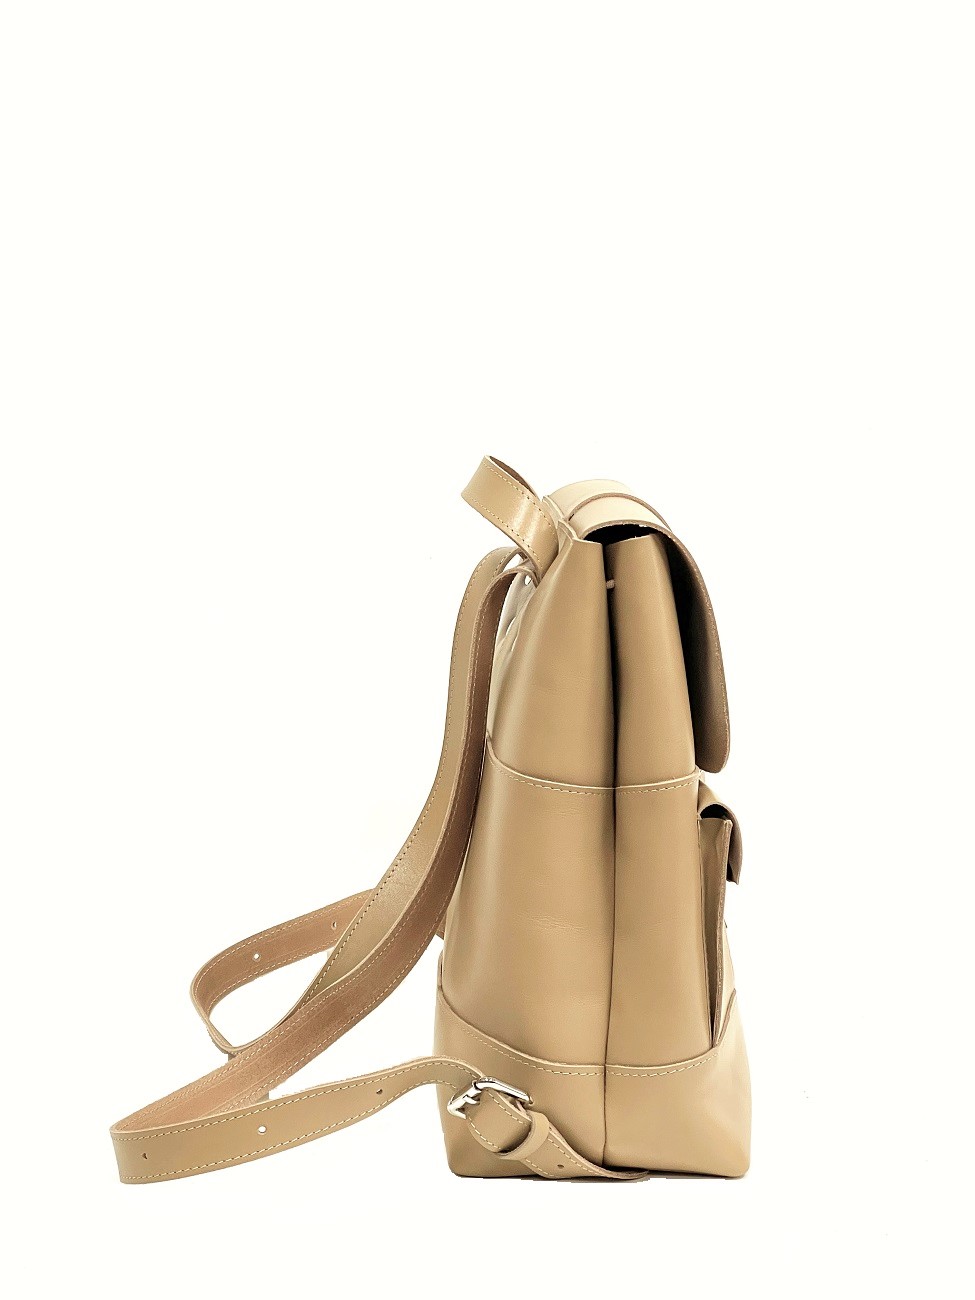 Женский рюкзак из натуральной кожи бежевый B010 beige